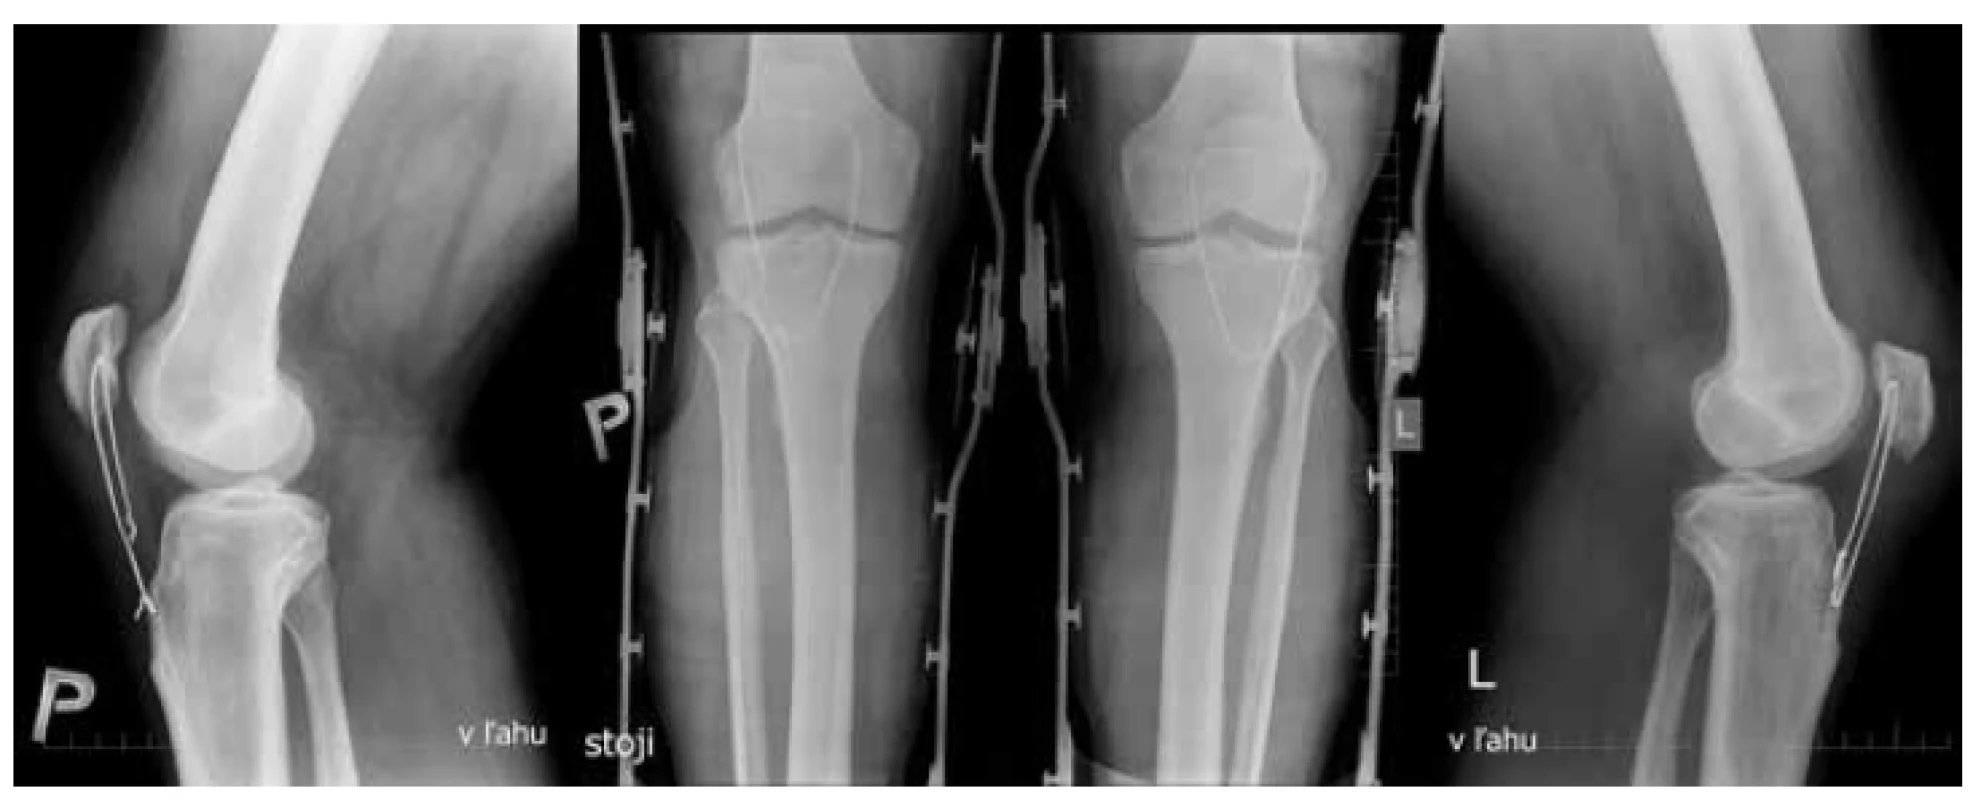 Predozadné a bočné projekcie
oboch kolien 2 týždne po operácii
Rozvlečenie serklážnej slučky pravého kolena
- patella alta (Insall-Salvati ratio=1,38).
Ľavé koleno - patela vo vyhovujúcom postavení
(Insall-Salvati ratio=1,056).<br>
Fig. 2: Anteroposterior and lateral views
of both knees two weeks after surgery
Unravelled wire on the right knee – patella alta
(Insall-Salvati ratio=1.38). Left knee – correct
patellar position (Insall-Salvati ratio=1.056).